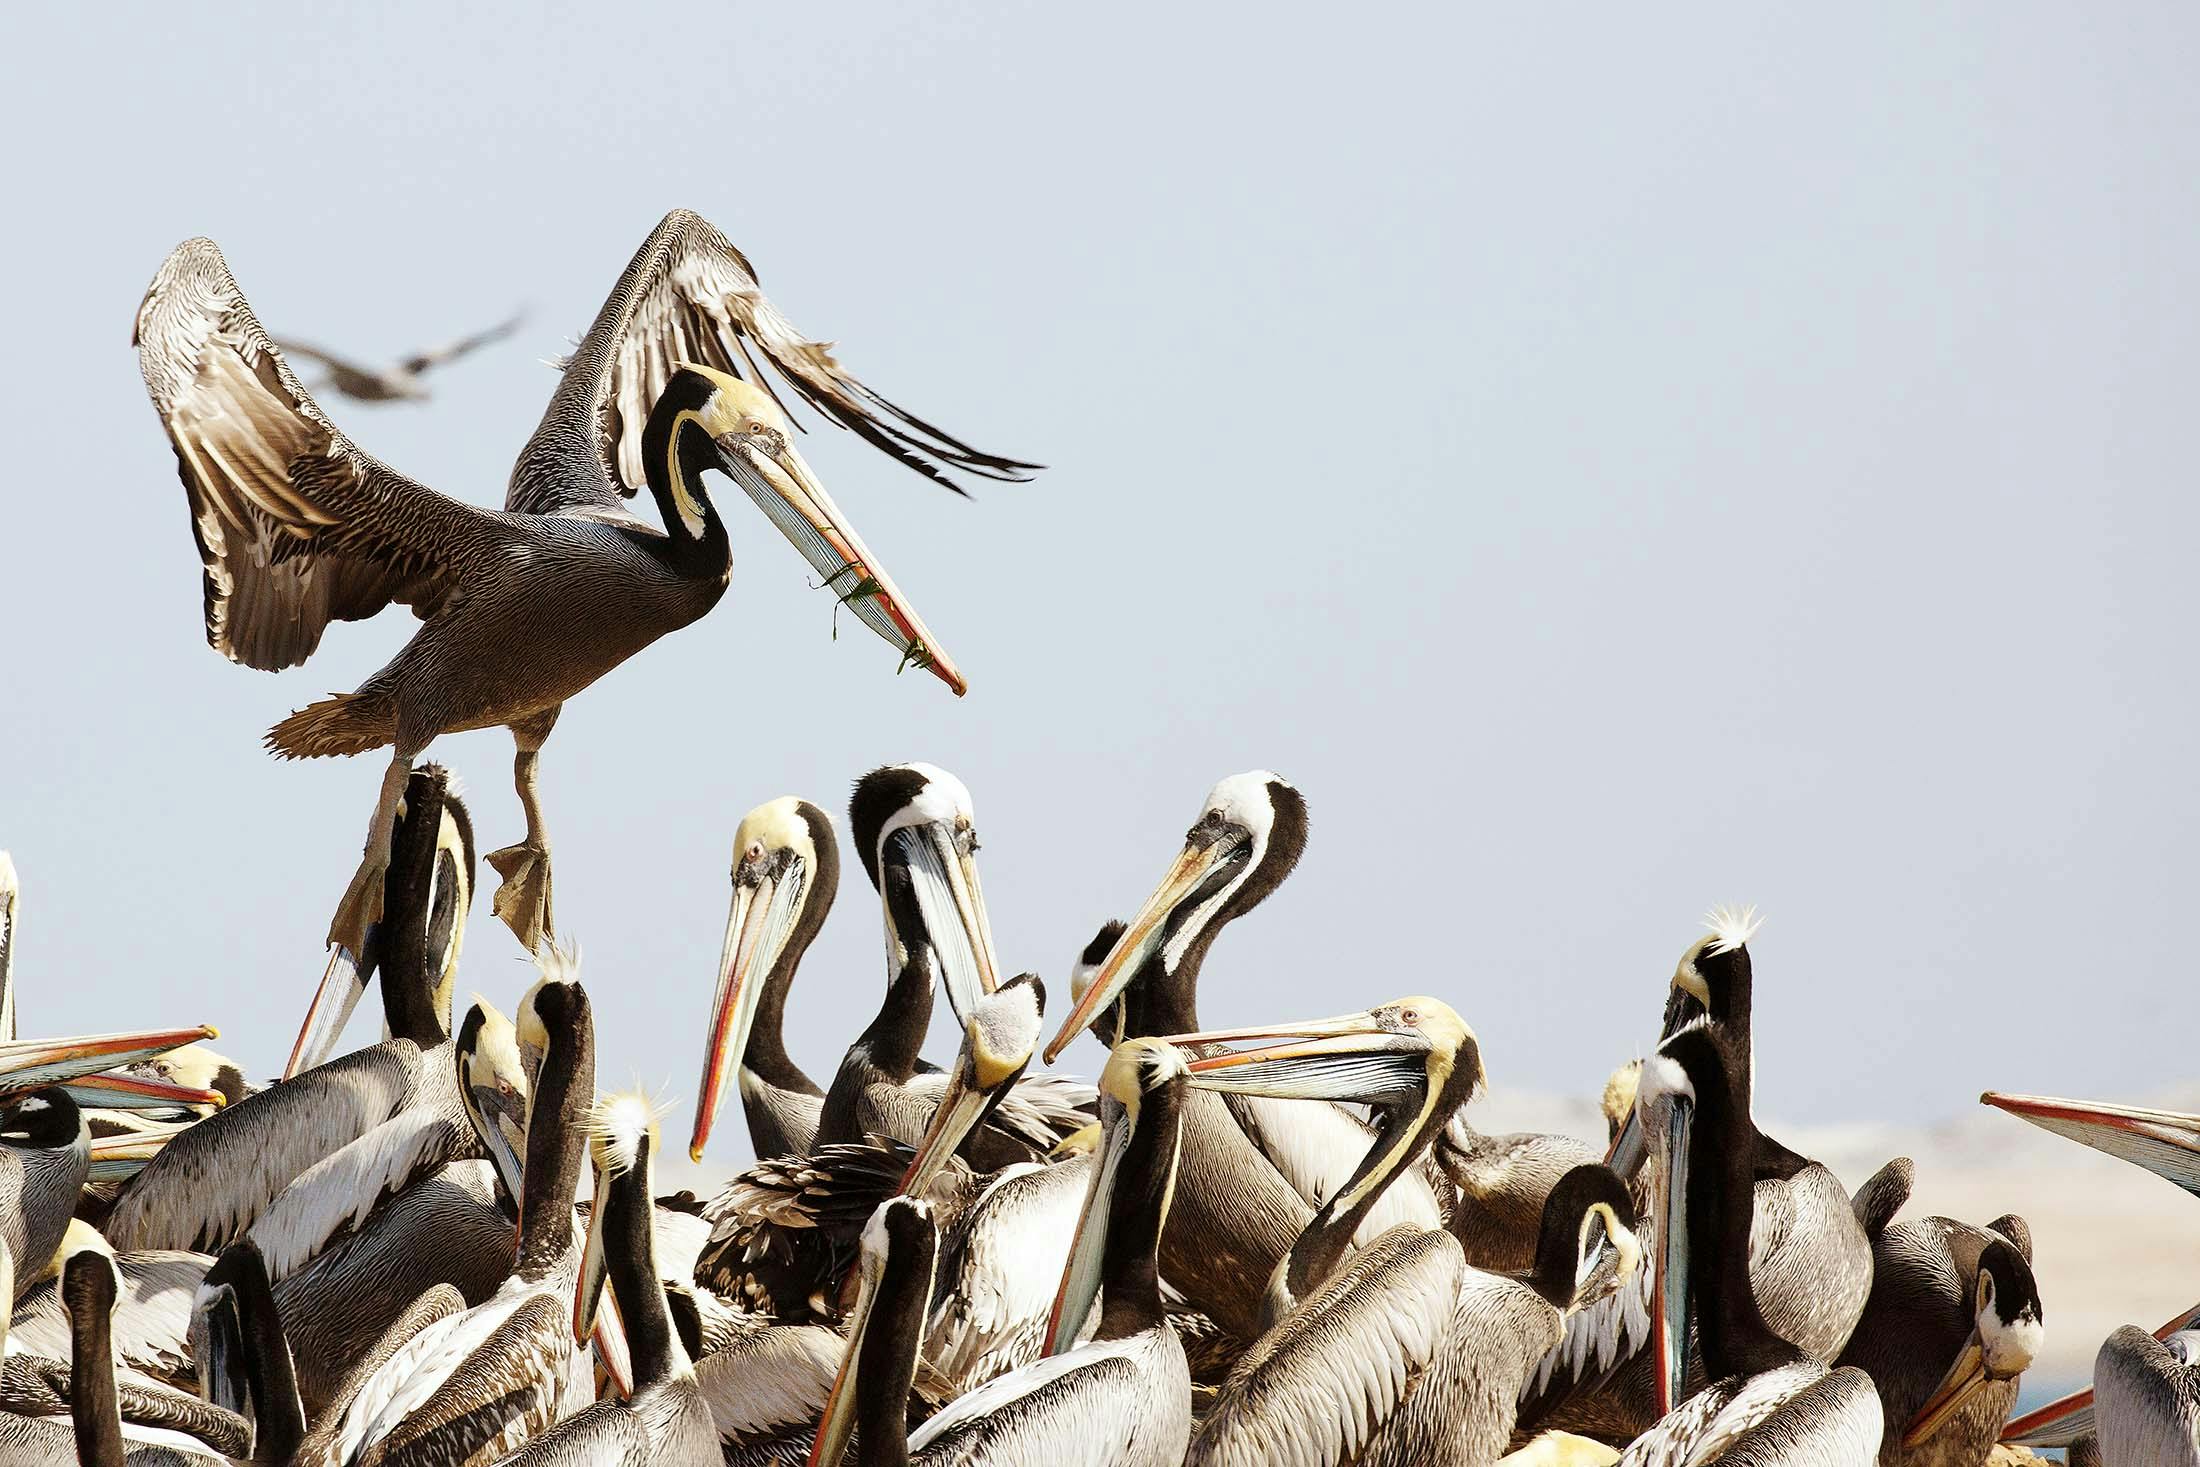 Peruvian pelicans in Peru